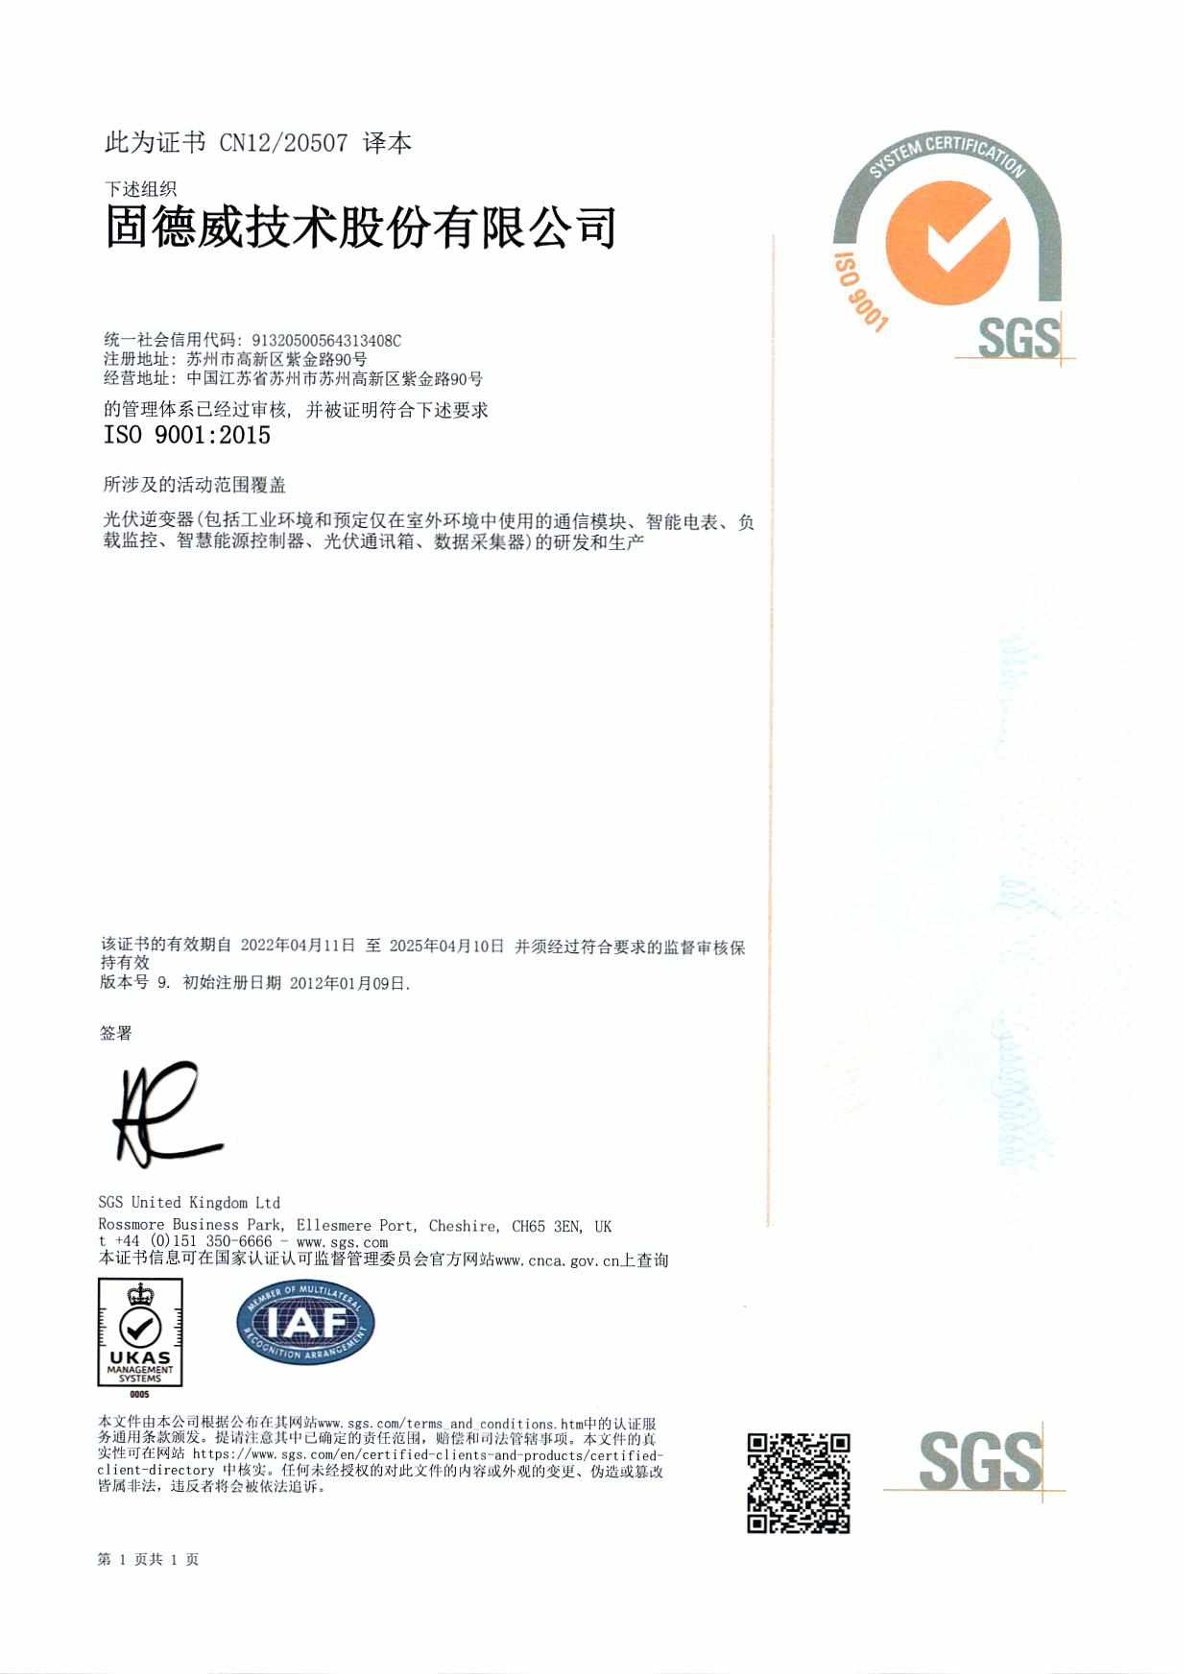 1.ISO9001zhiliangguanlitixizhengshu.jpg